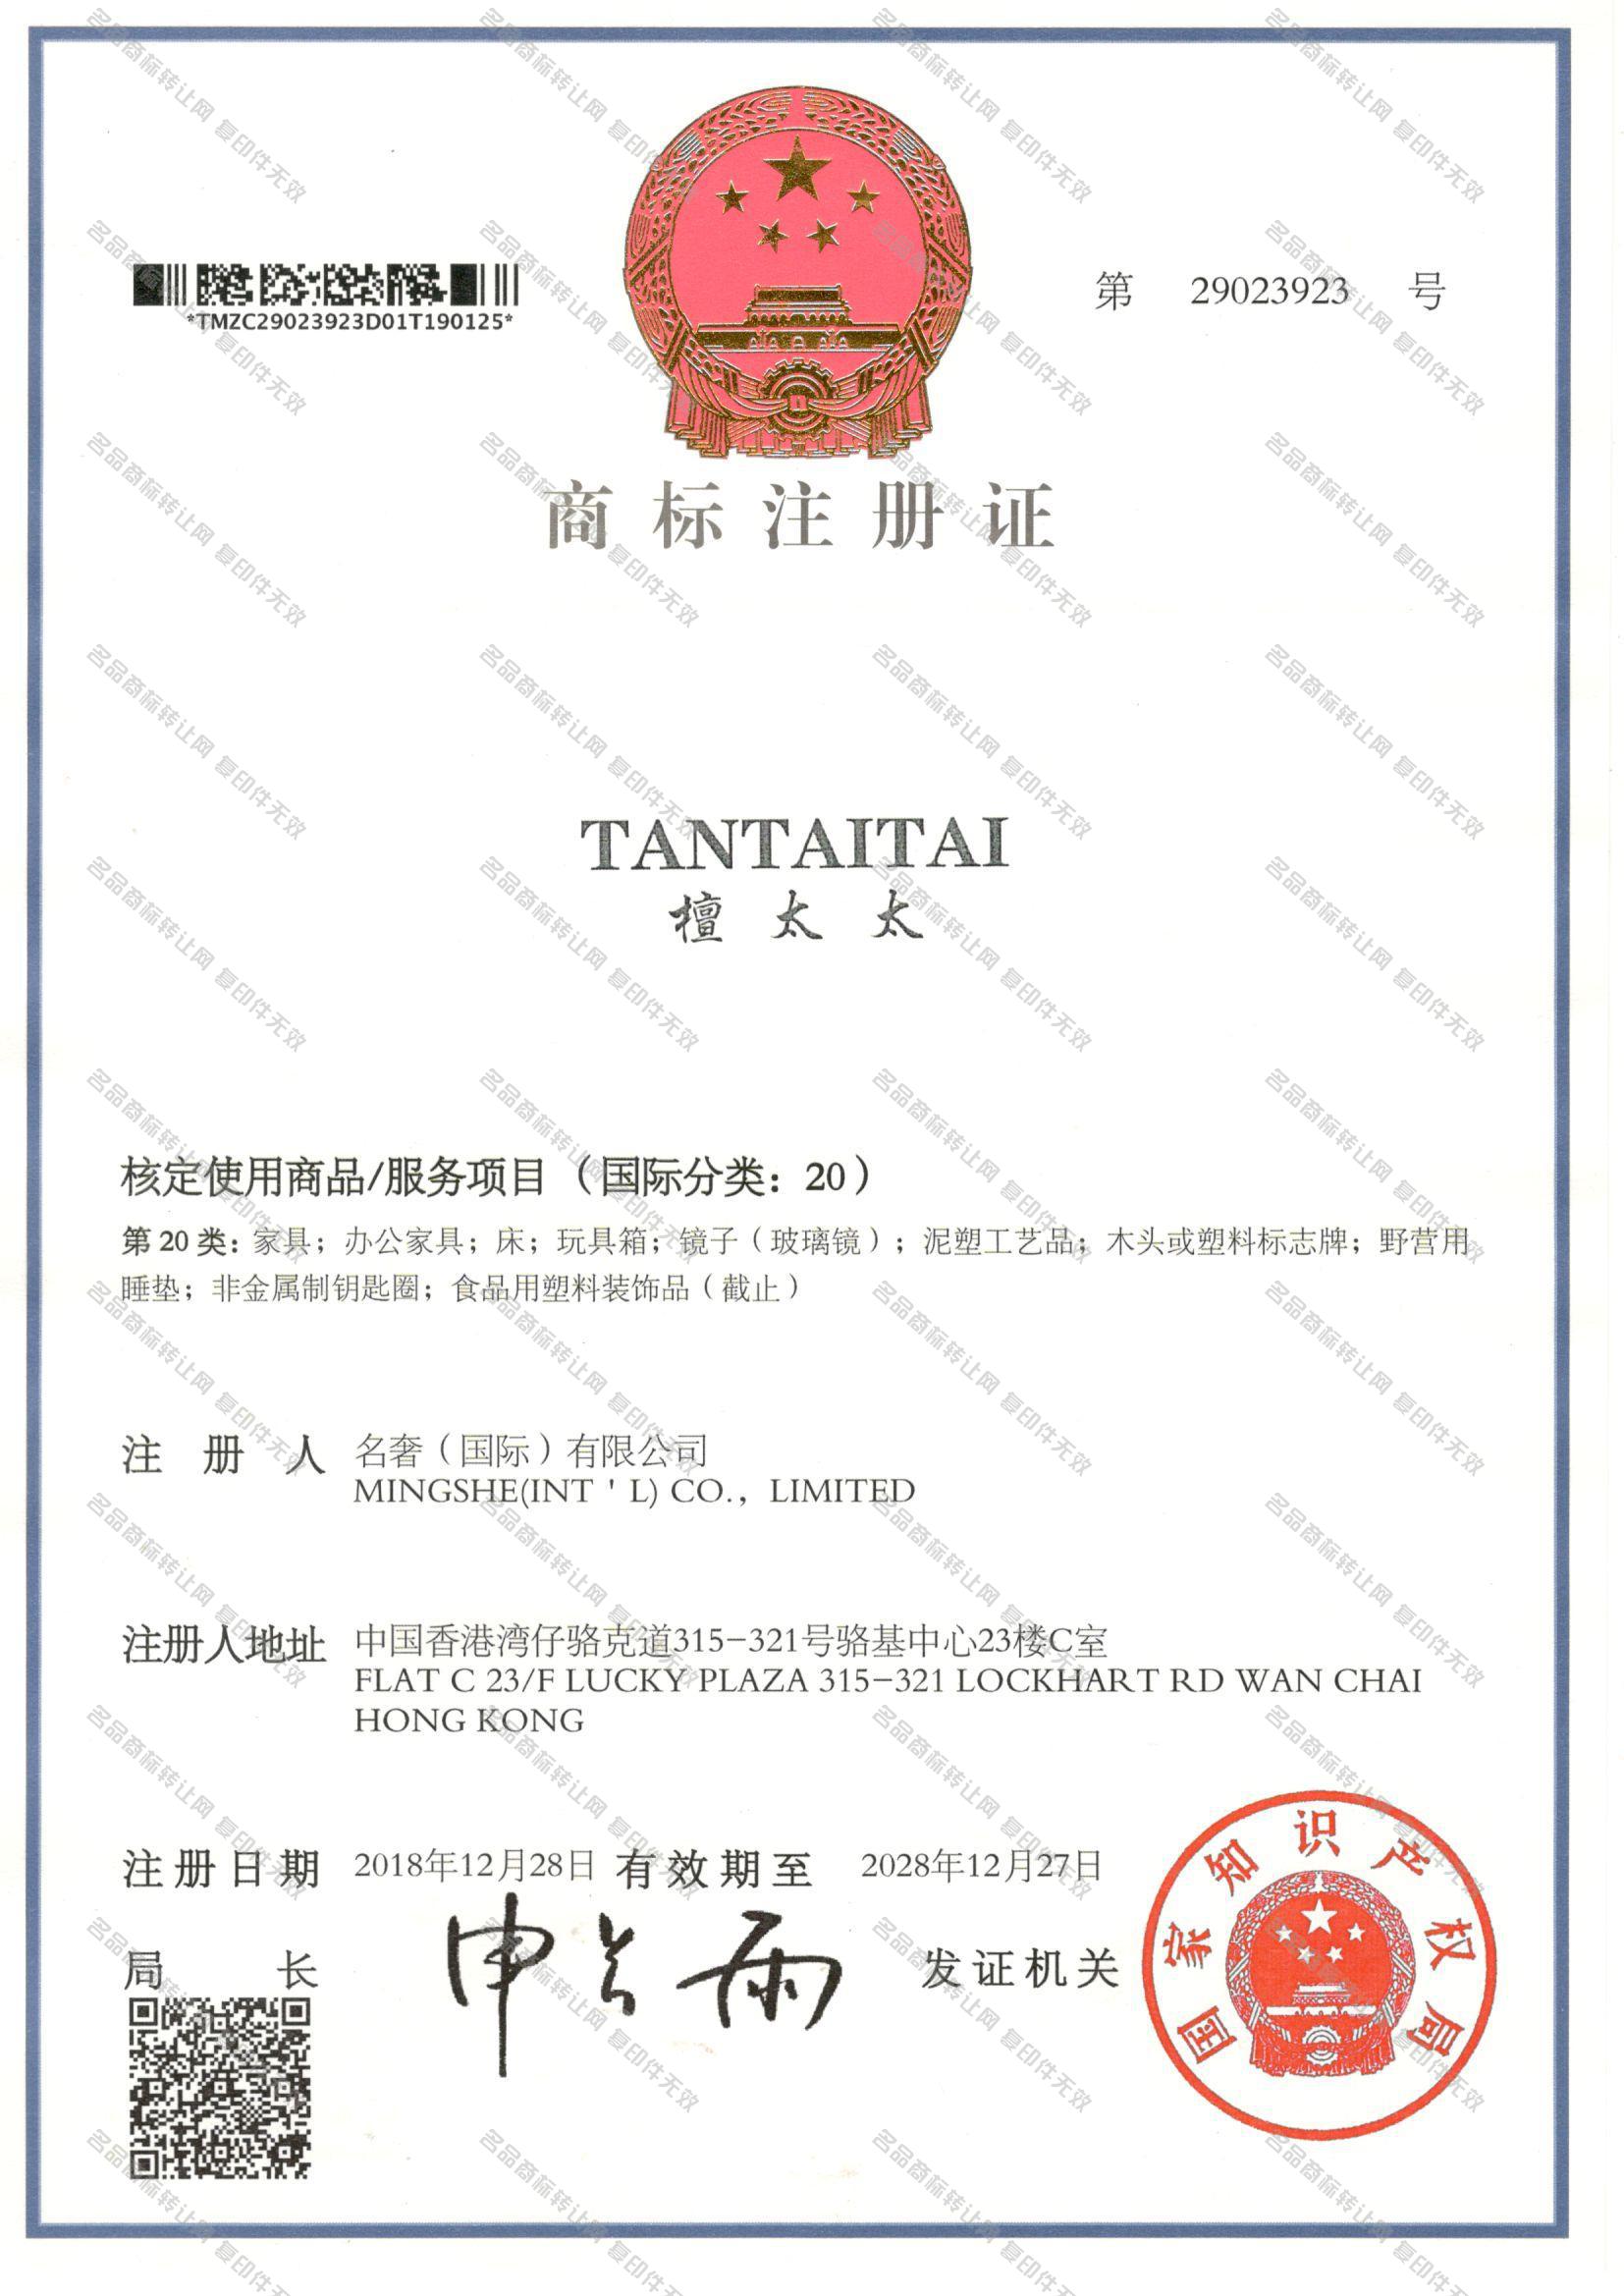 檀太太 TANTAITAI注册证